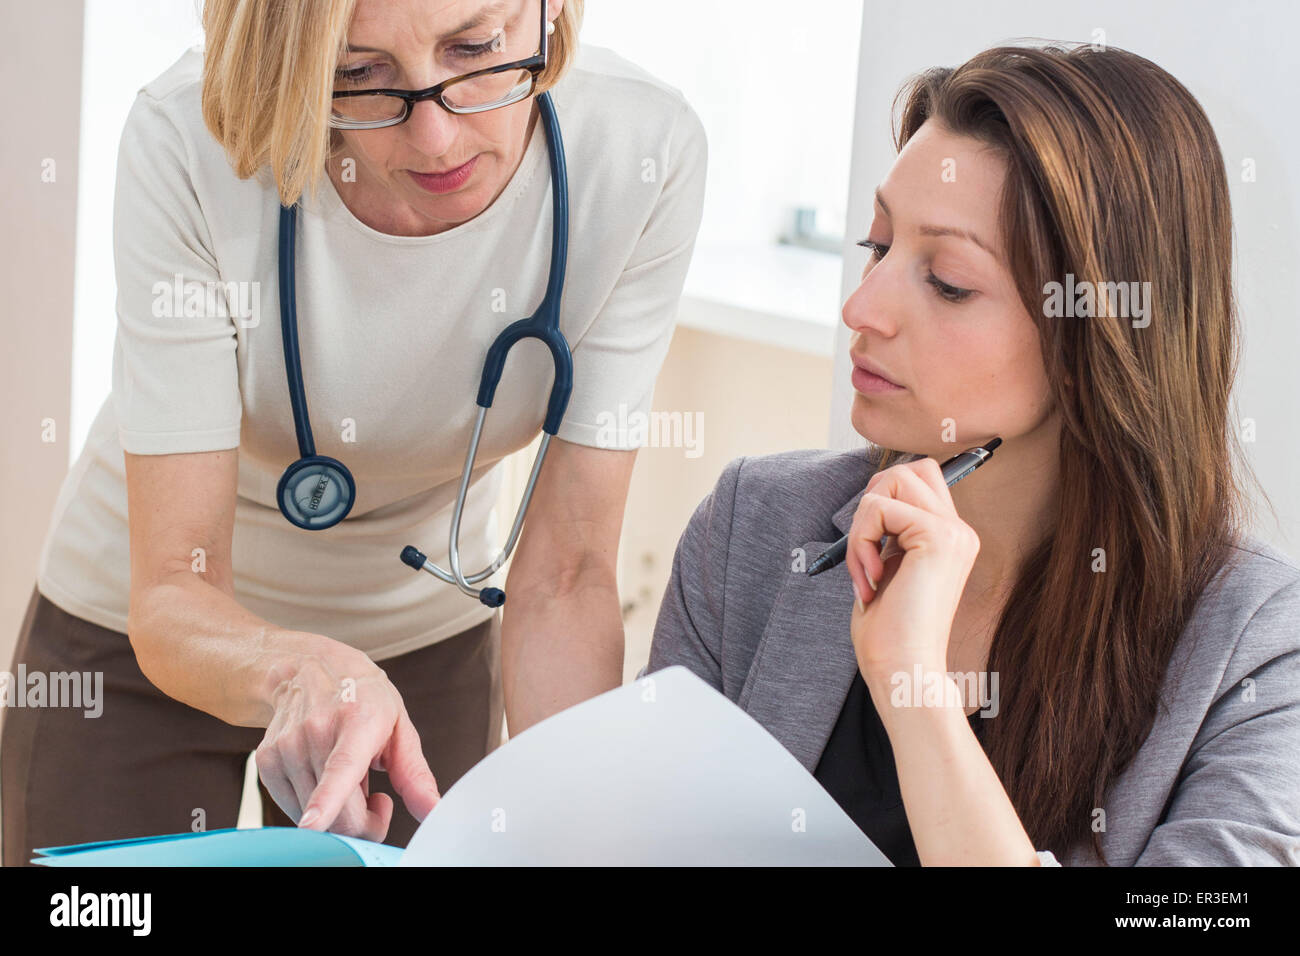 Une secrétaire médicale reçoit des instructions données par le médecin elle assiste. Banque D'Images